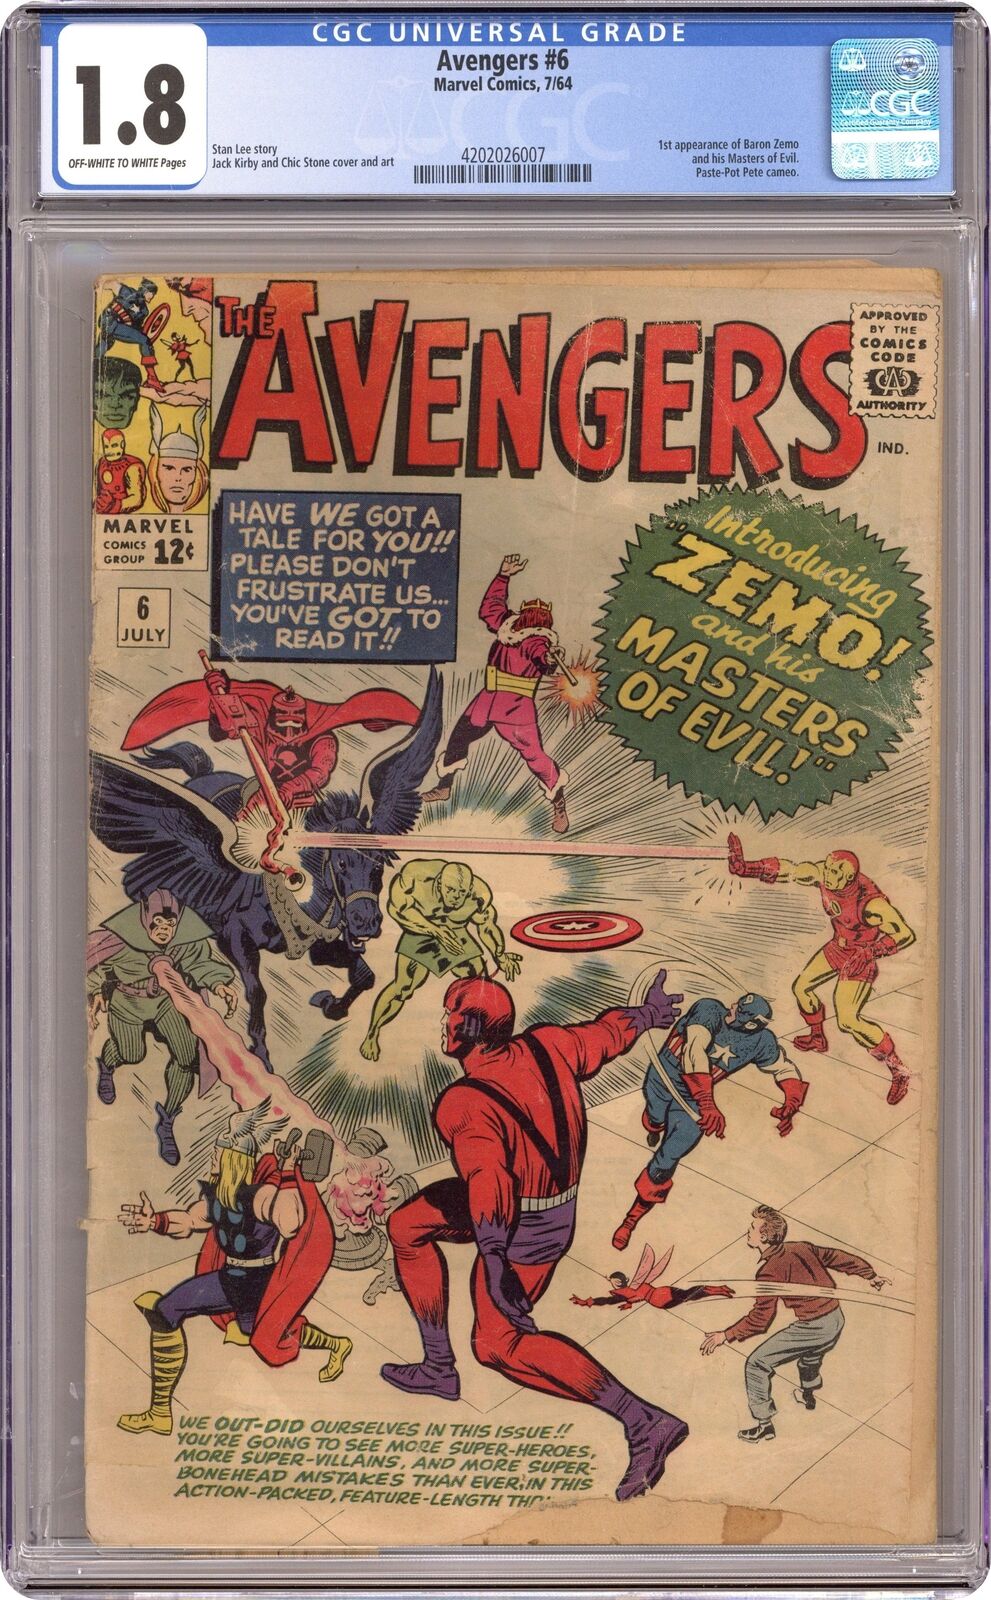 Avengers #6 CGC 1.8 1964 4202026007 1st full app. Baron Zemo